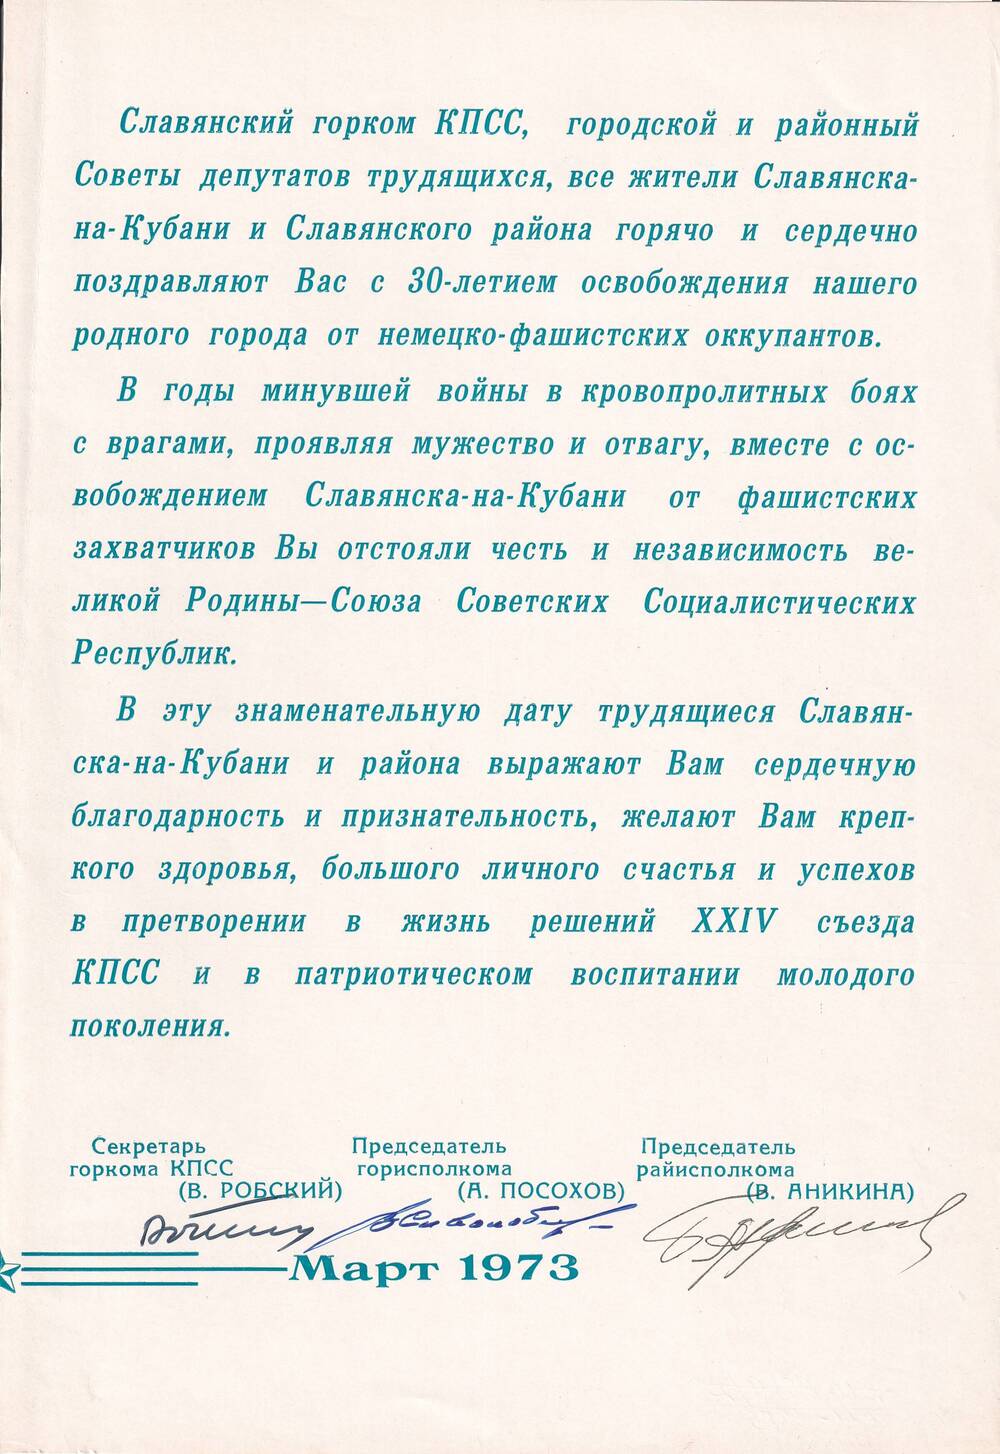 Поздравление Славянского горкома КПСС.